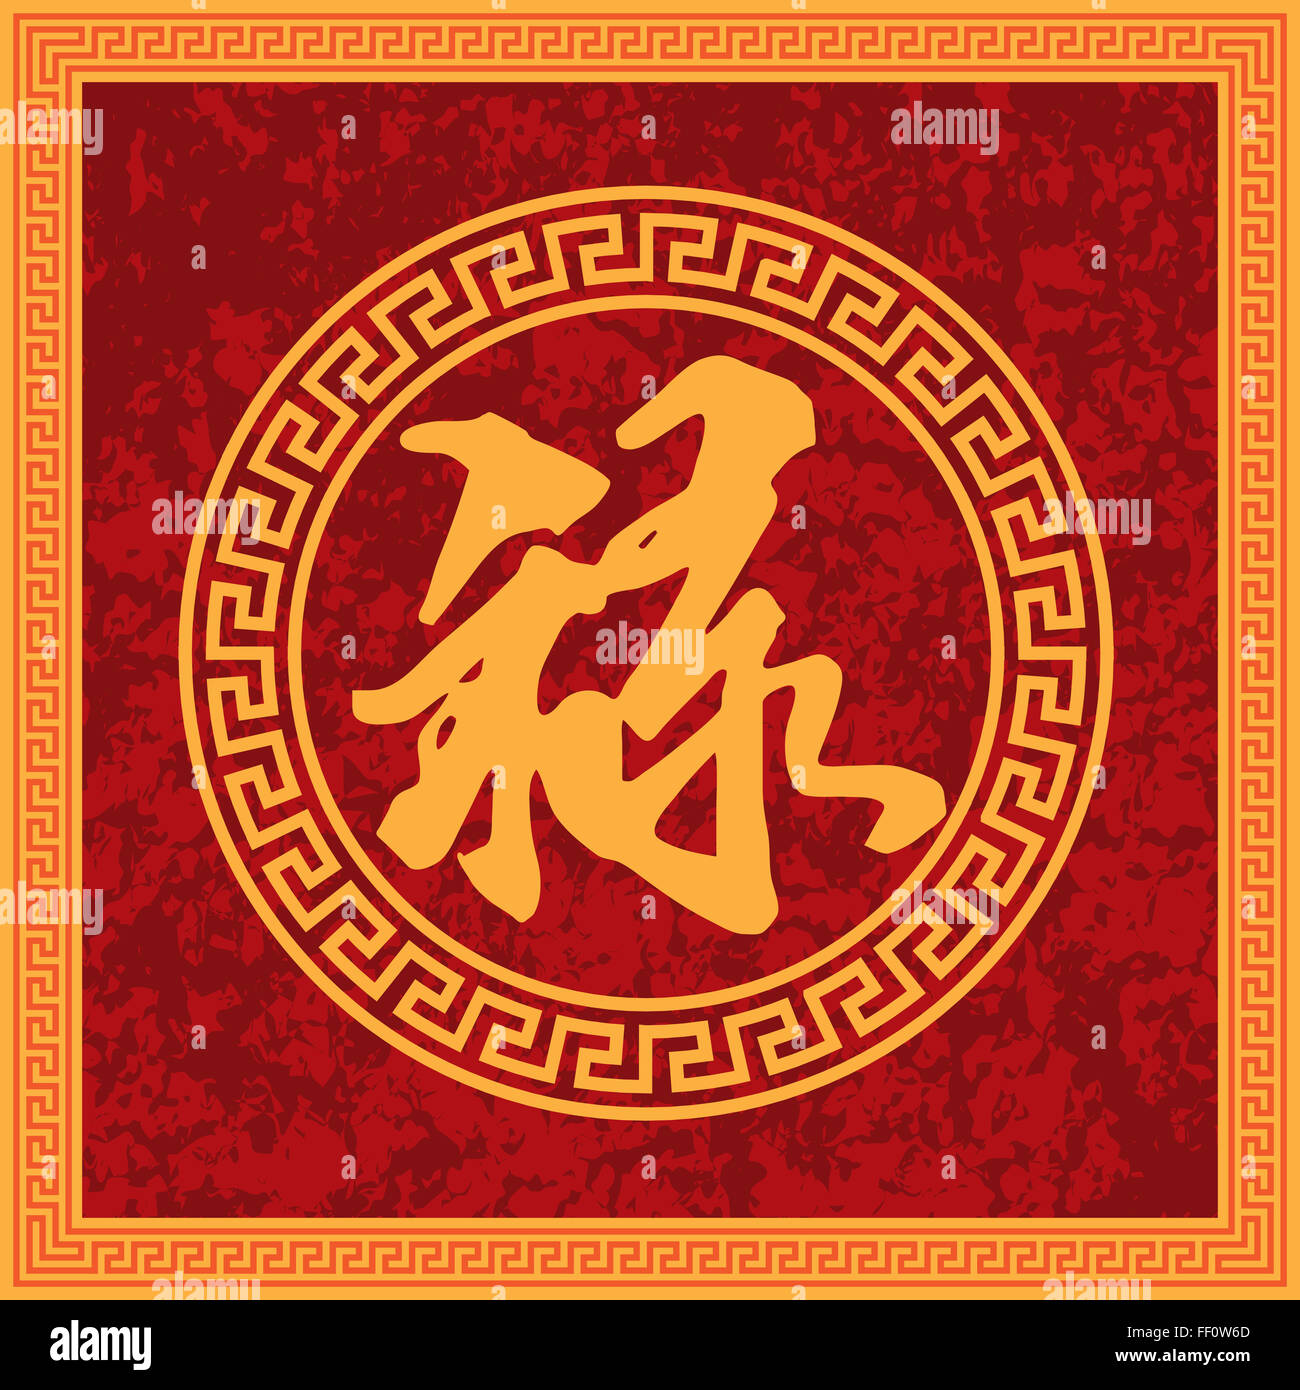 La prosperidad la riqueza de caligrafía china en el cuadrado de texto Textura Fondo rojo ilustración del bastidor Foto de stock